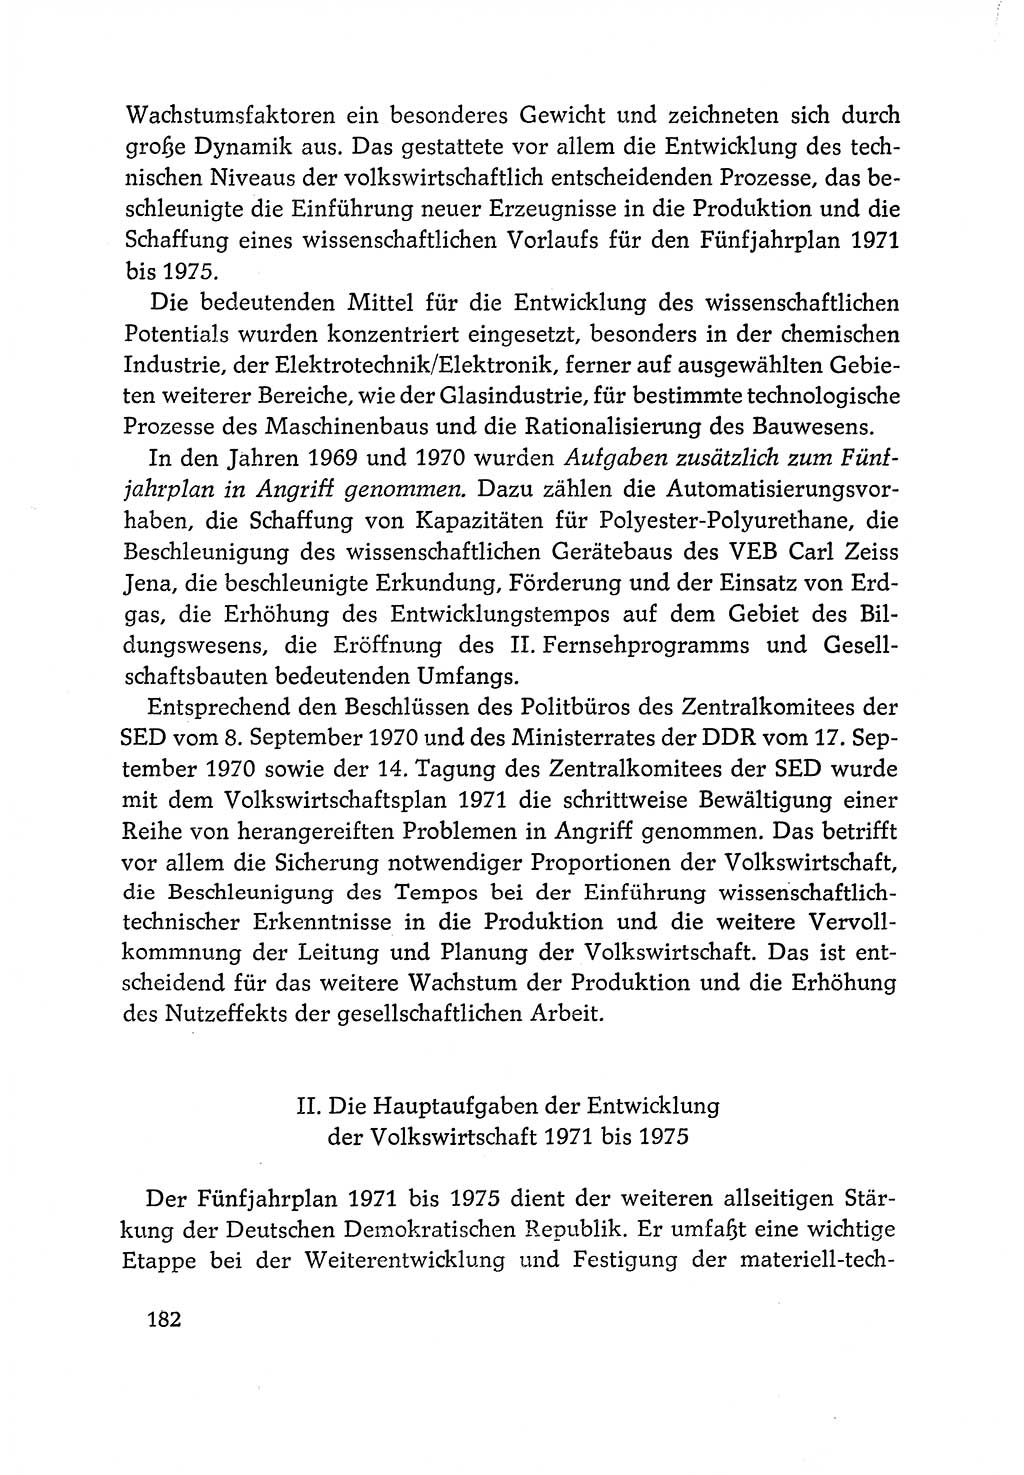 Dokumente der Sozialistischen Einheitspartei Deutschlands (SED) [Deutsche Demokratische Republik (DDR)] 1970-1971, Seite 182 (Dok. SED DDR 1970-1971, S. 182)